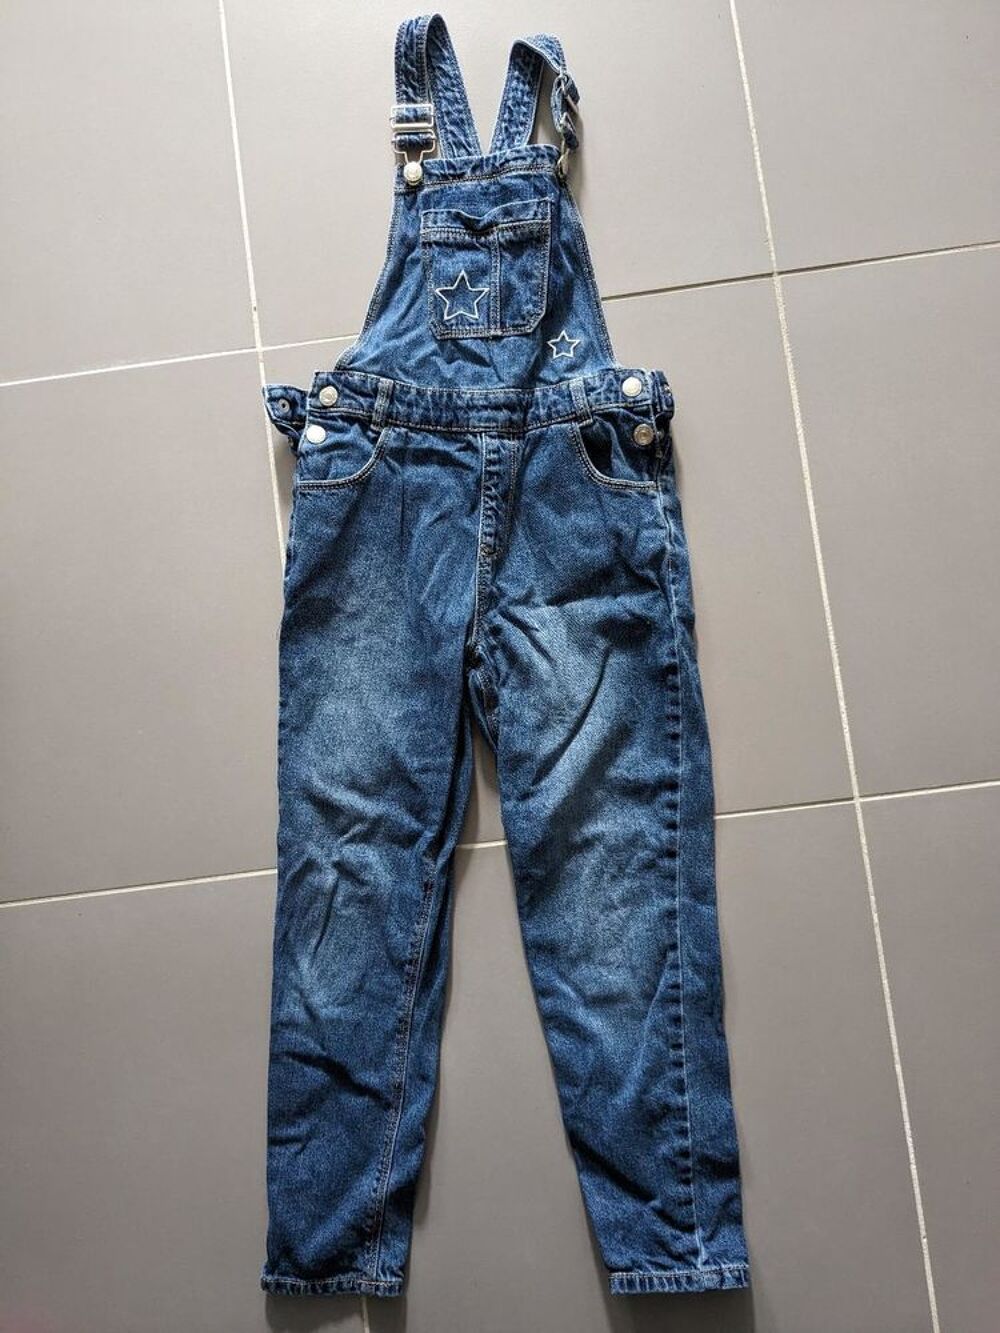 Salopette pantalon jean fille in extenso 8 ans Vêtements enfants